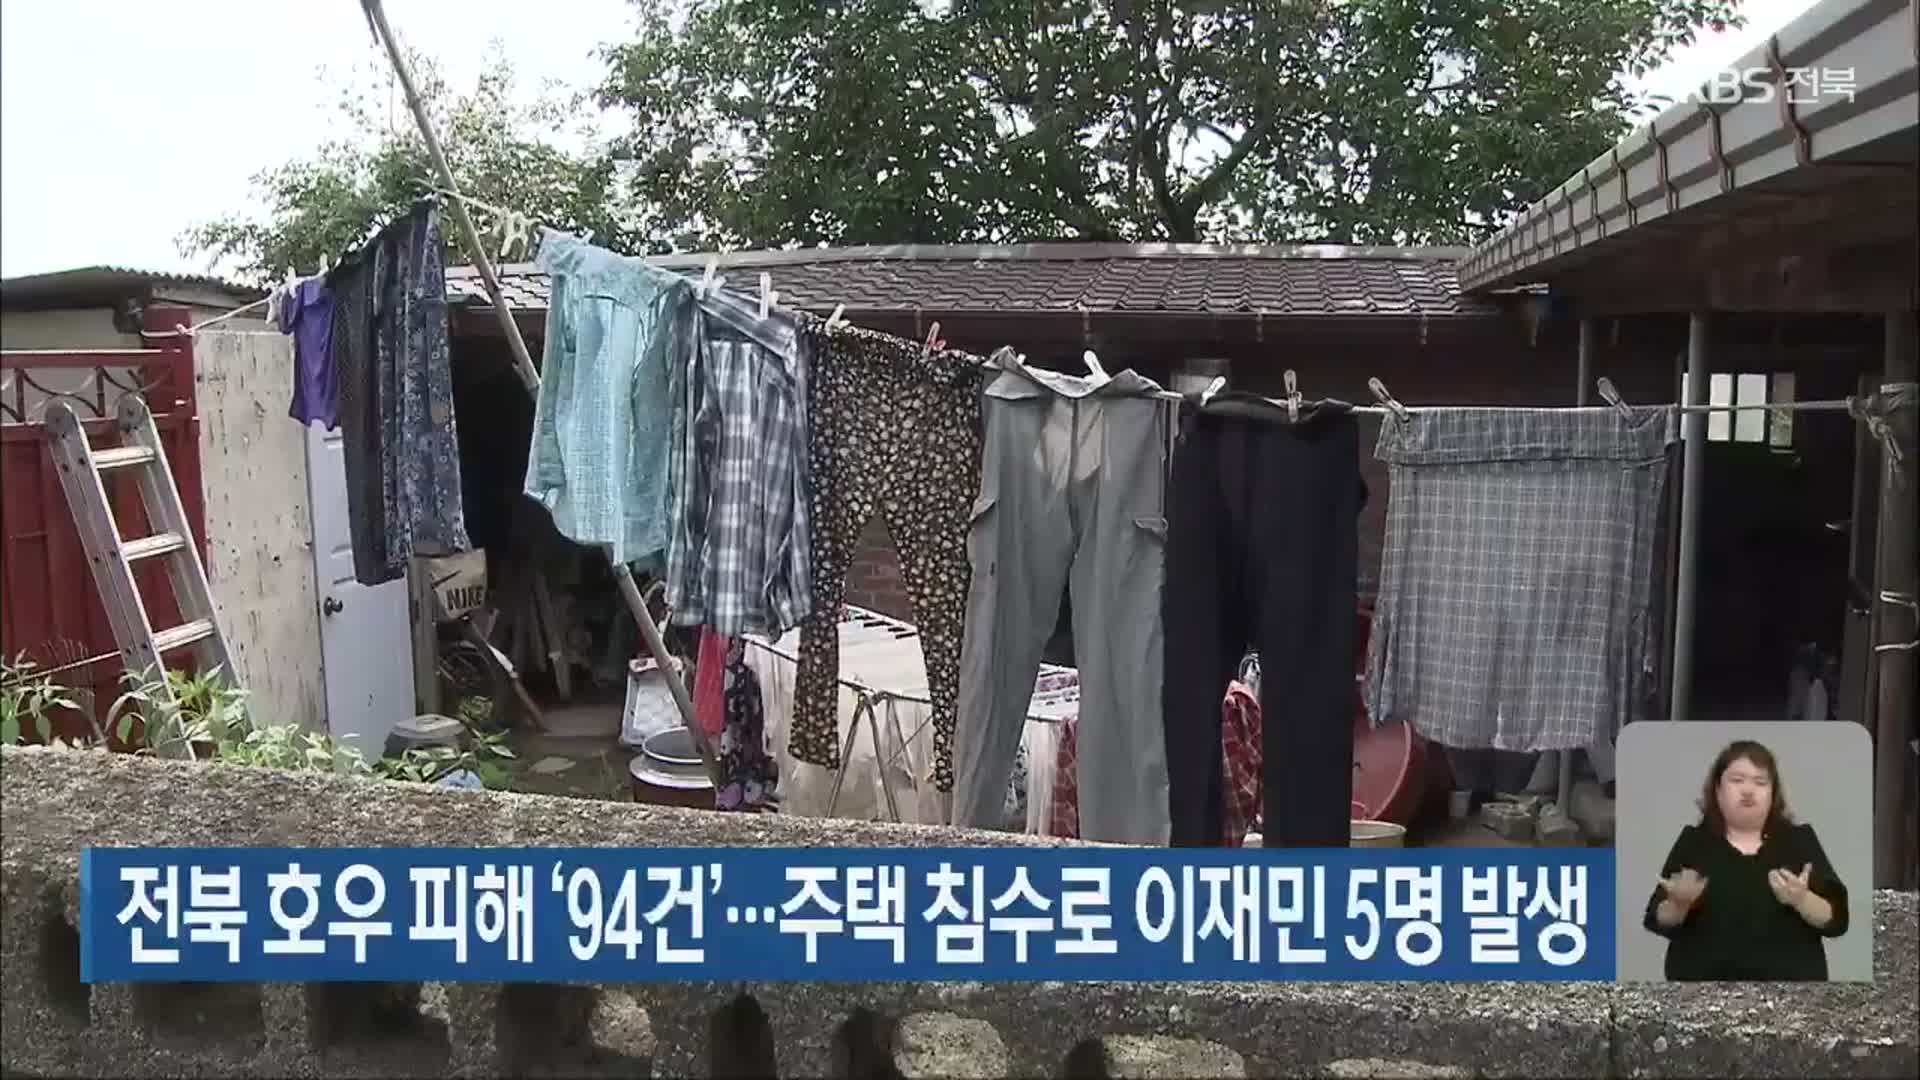 전북 호우 피해 ‘94건’…주택 침수로 이재민 5명 발생